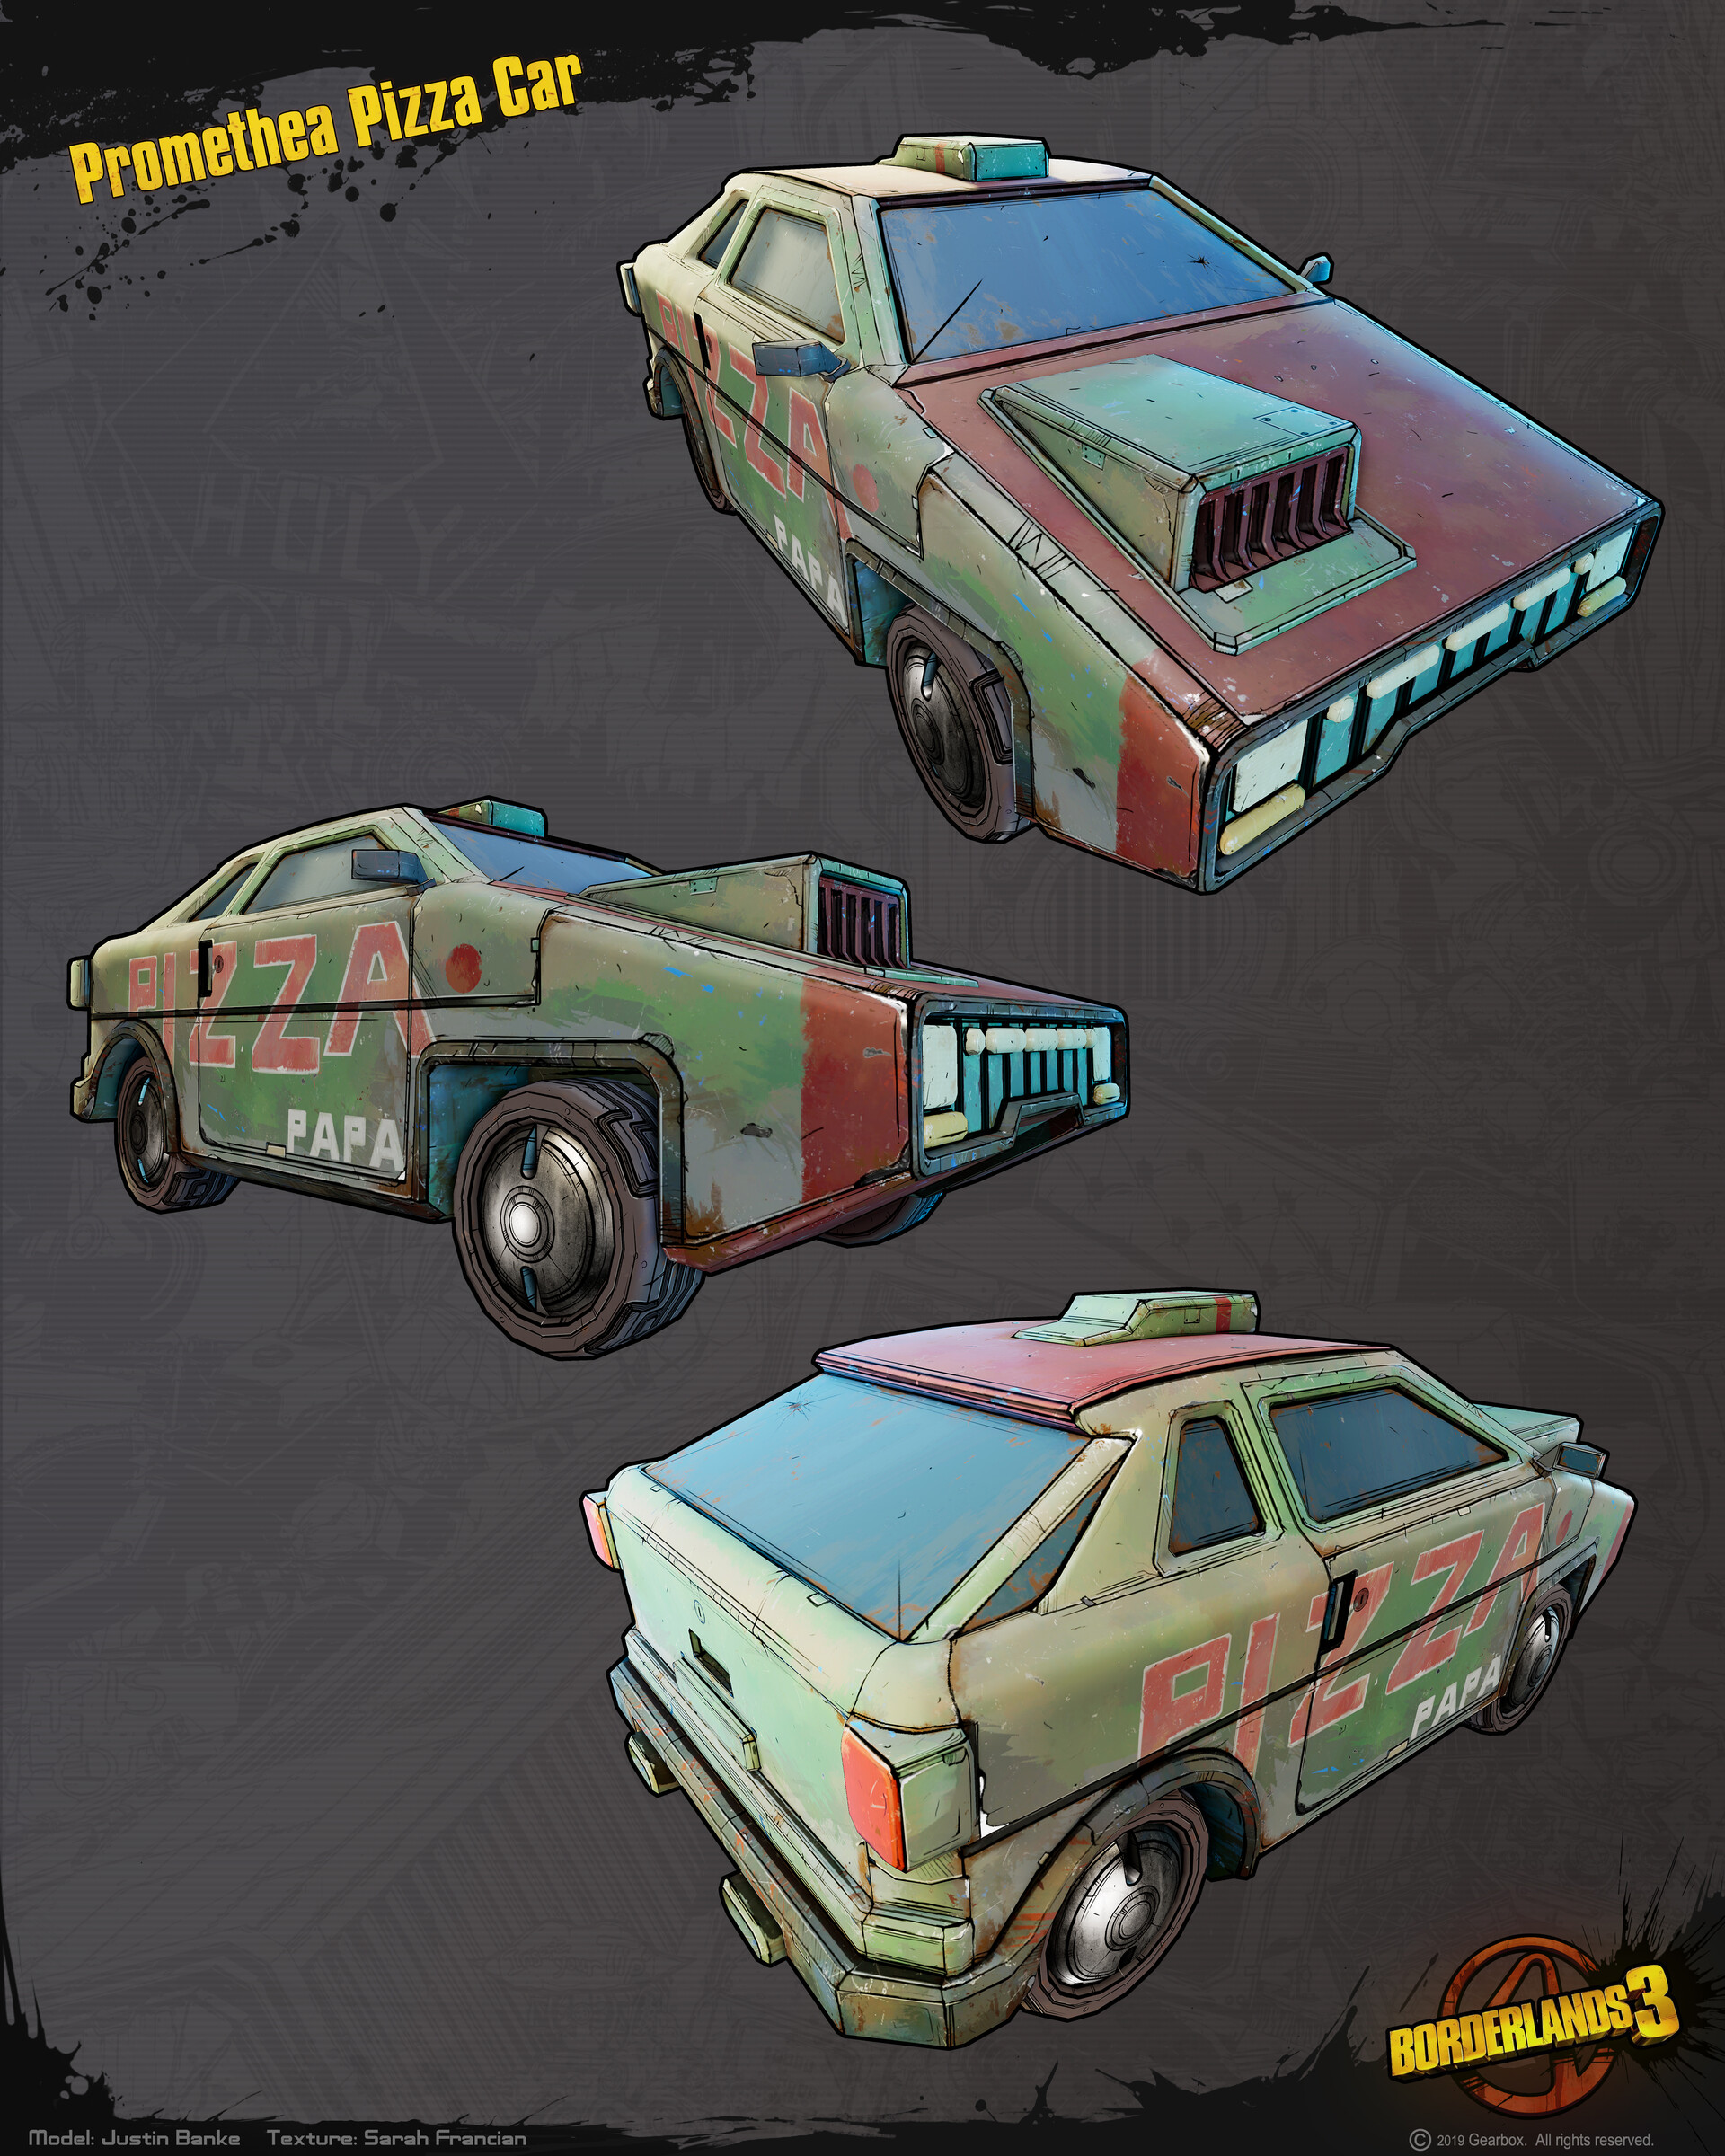 Justin Banke - Borderlands 3 - Vehicles - Pizza Car